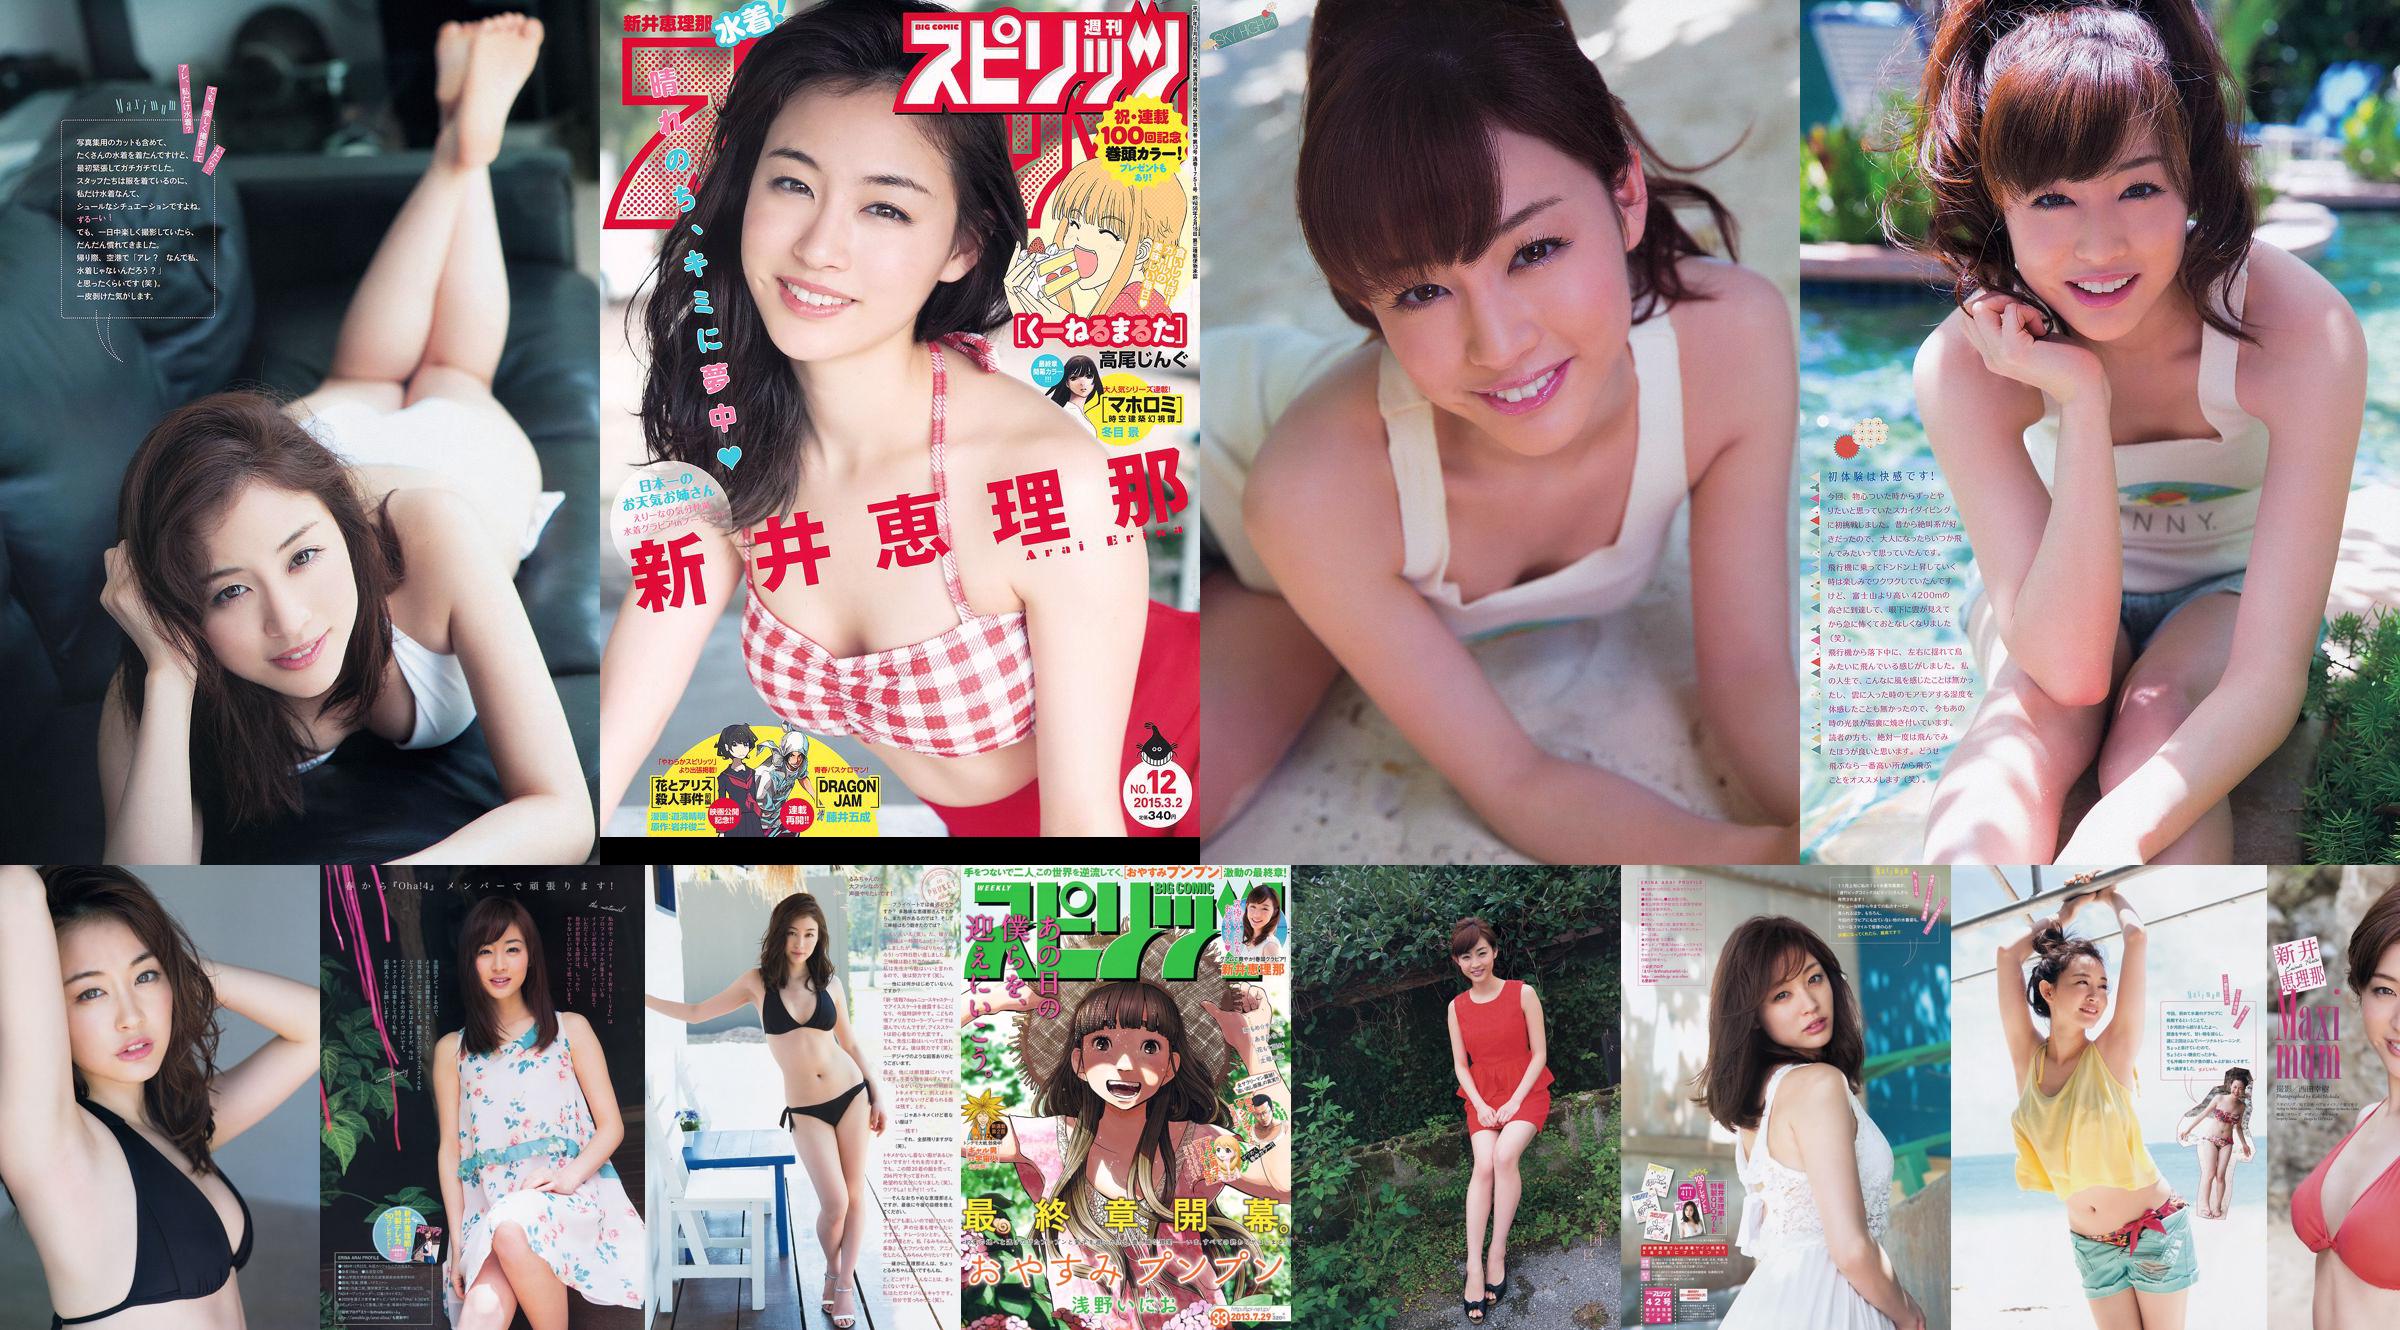 [Wöchentliche große Comic-Geister] Erina Arai No.14 Photo Magazine im Jahr 2013 No.ae6927 Seite 2